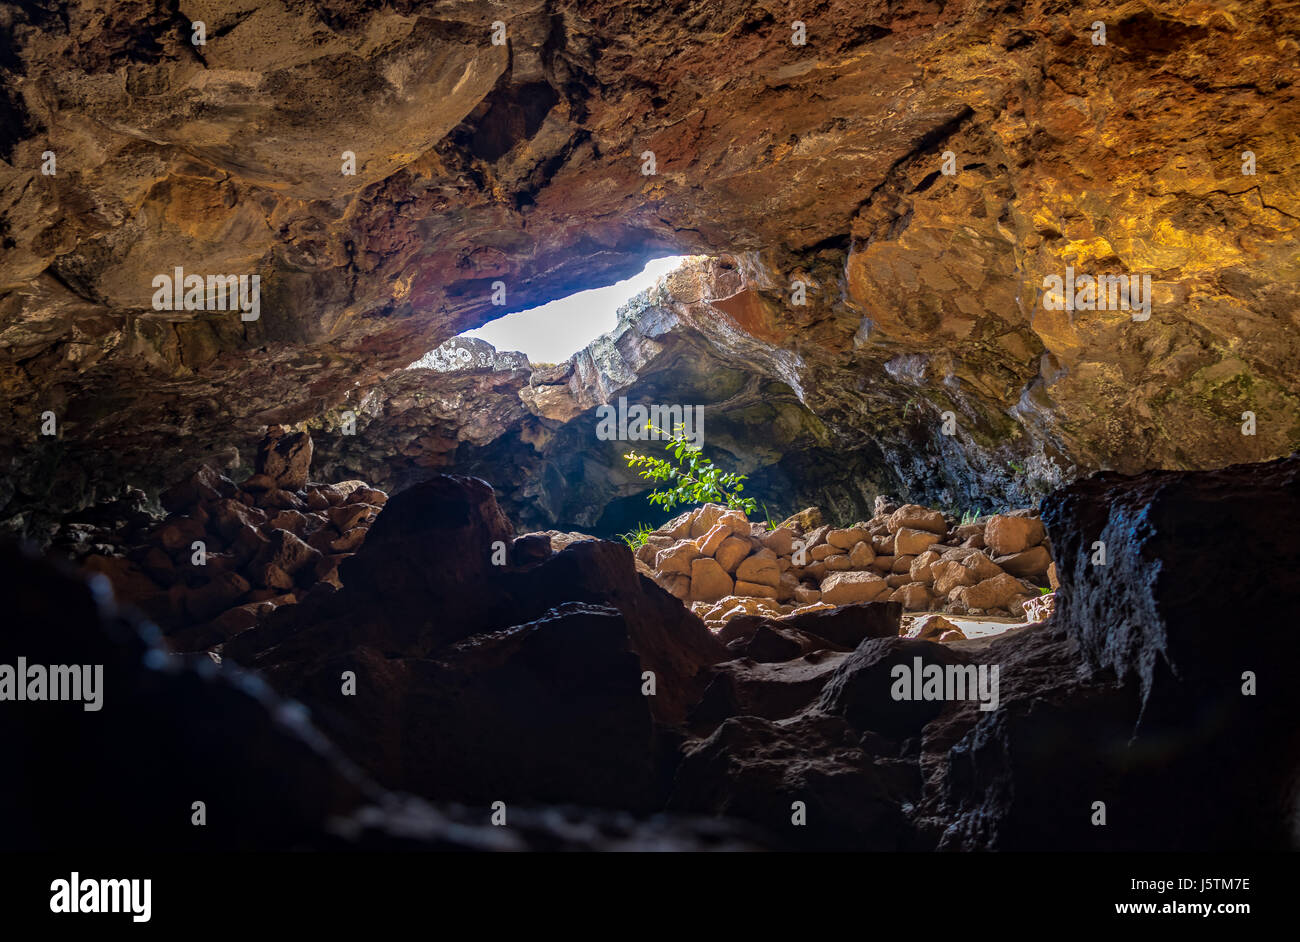 Impianto colpito dalla luce del sole ad Ana Te Pahu grotta - Isola di Pasqua, Cile Foto Stock